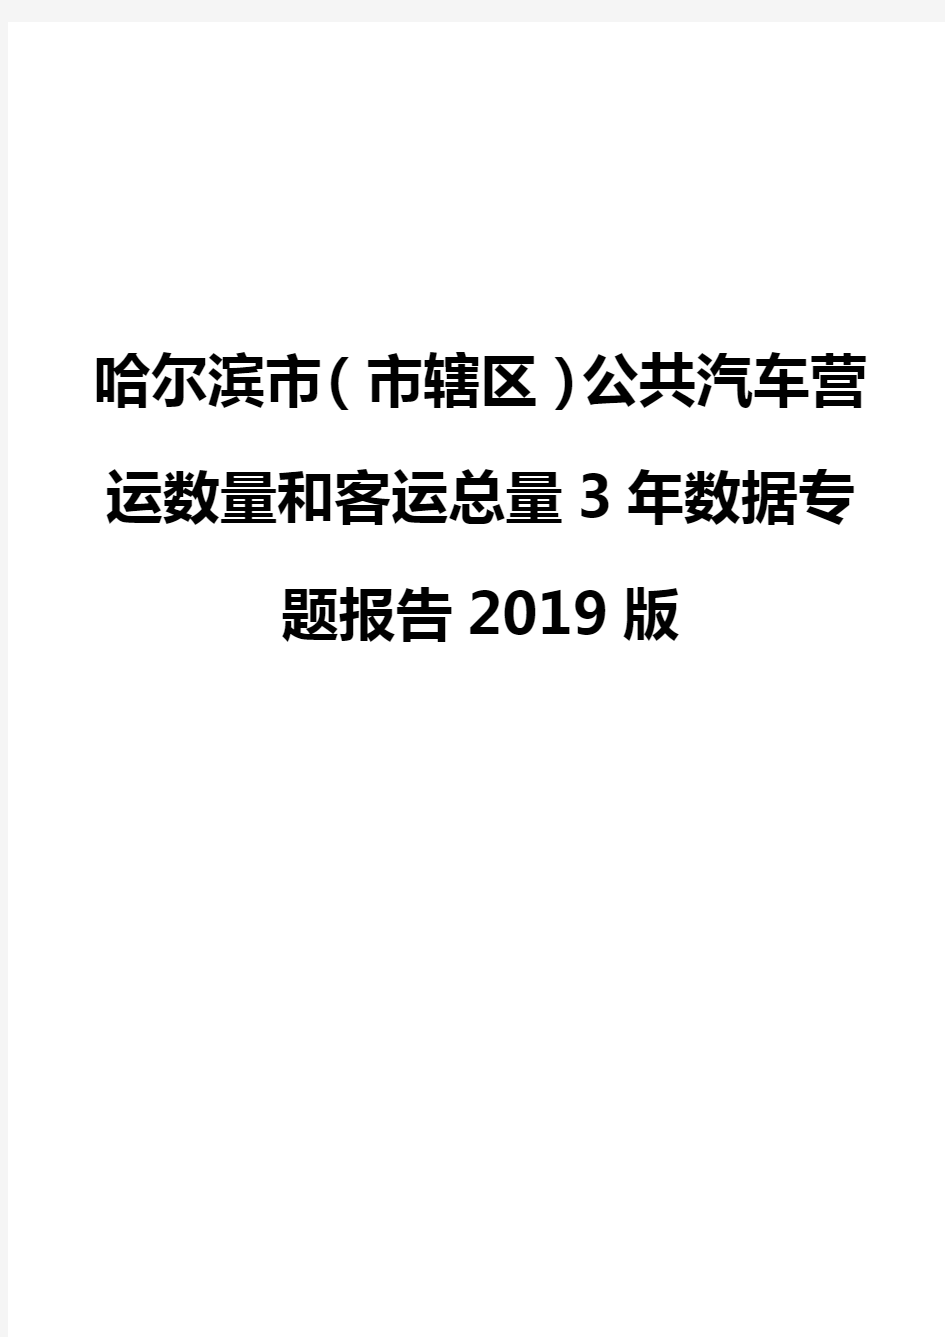 哈尔滨市(市辖区)公共汽车营运数量和客运总量3年数据专题报告2019版